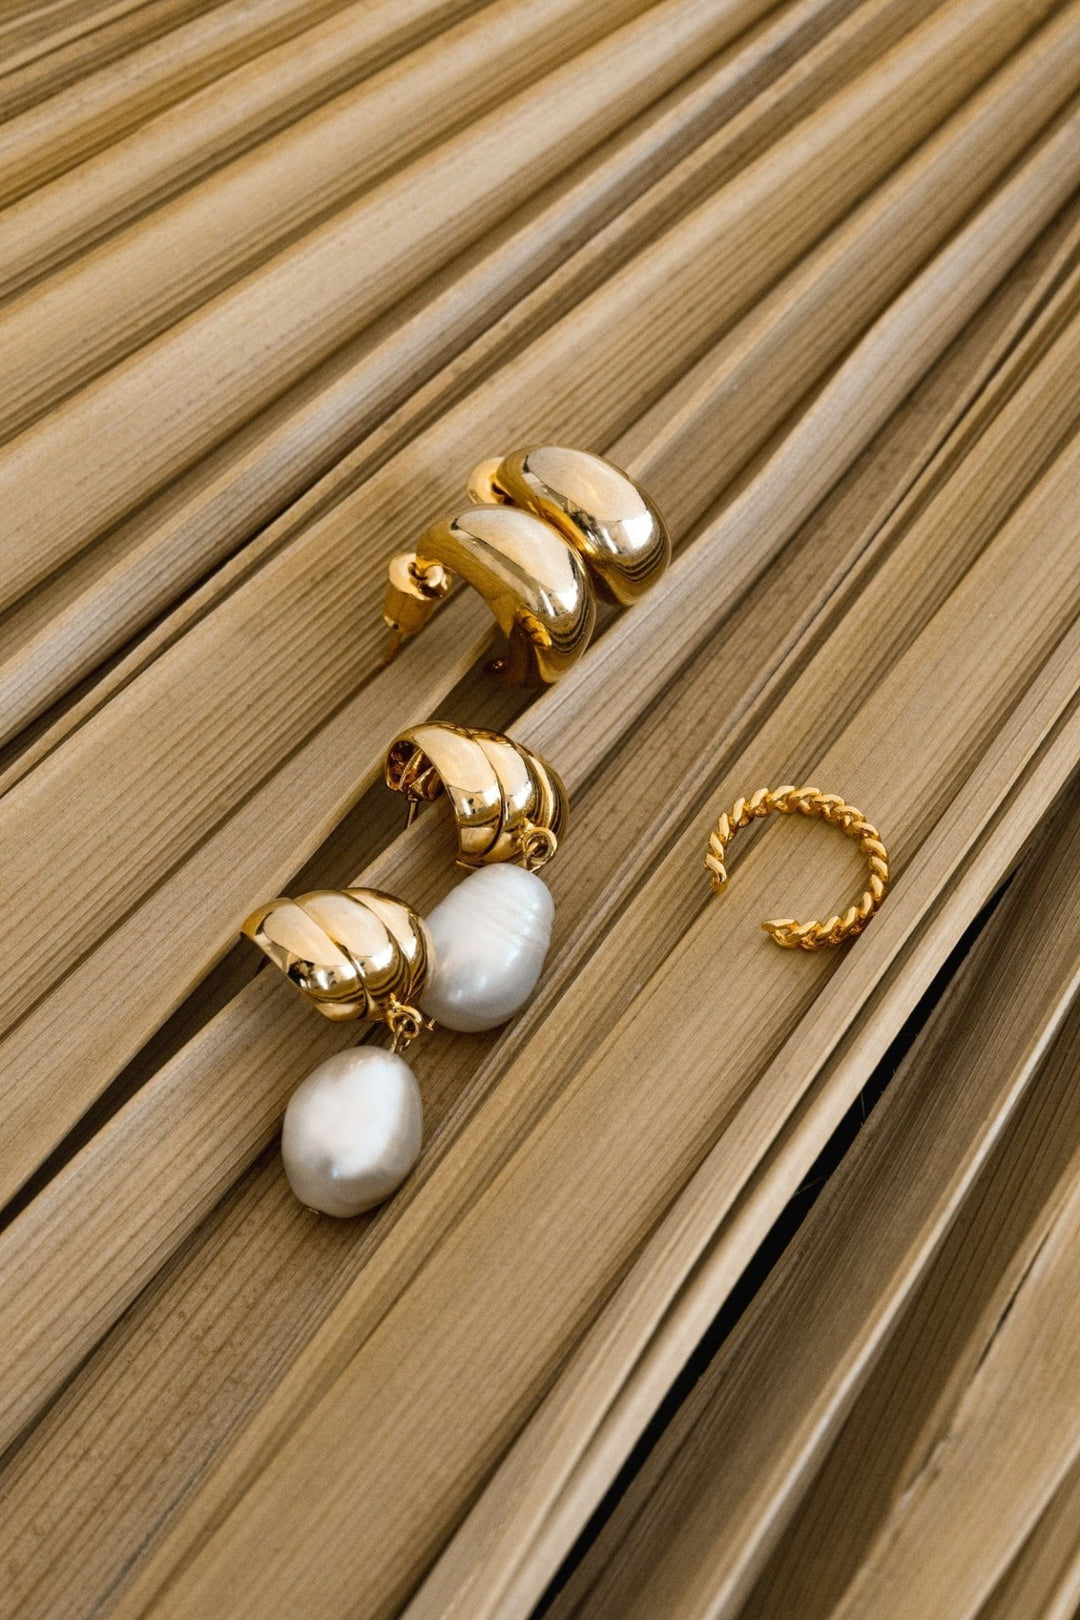 Tapered Domed Hoop Pale Gold | Accessories | Smuk - Dameklær på nett